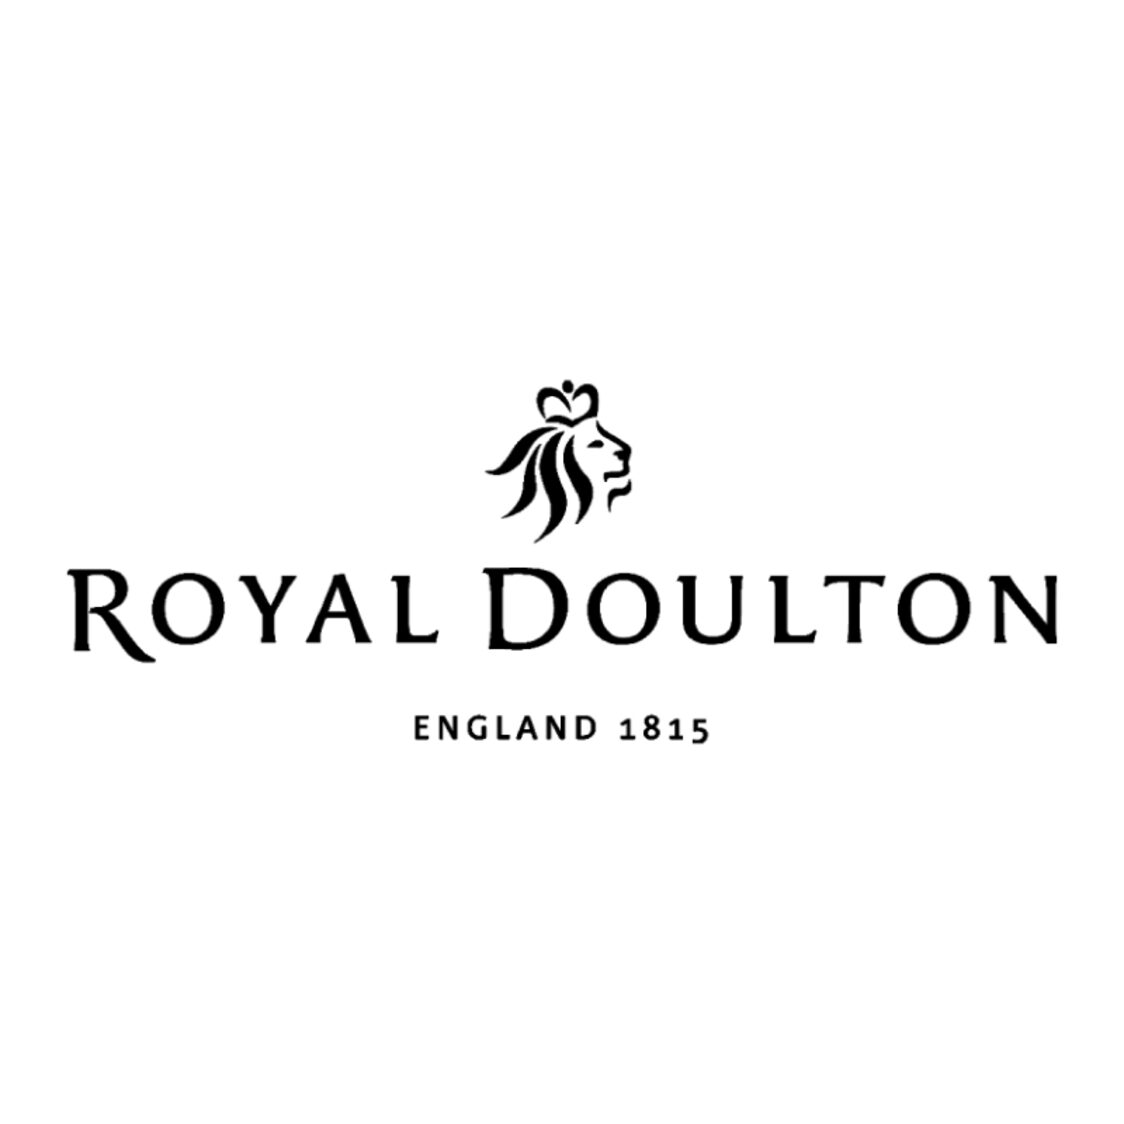 royal doulton logo